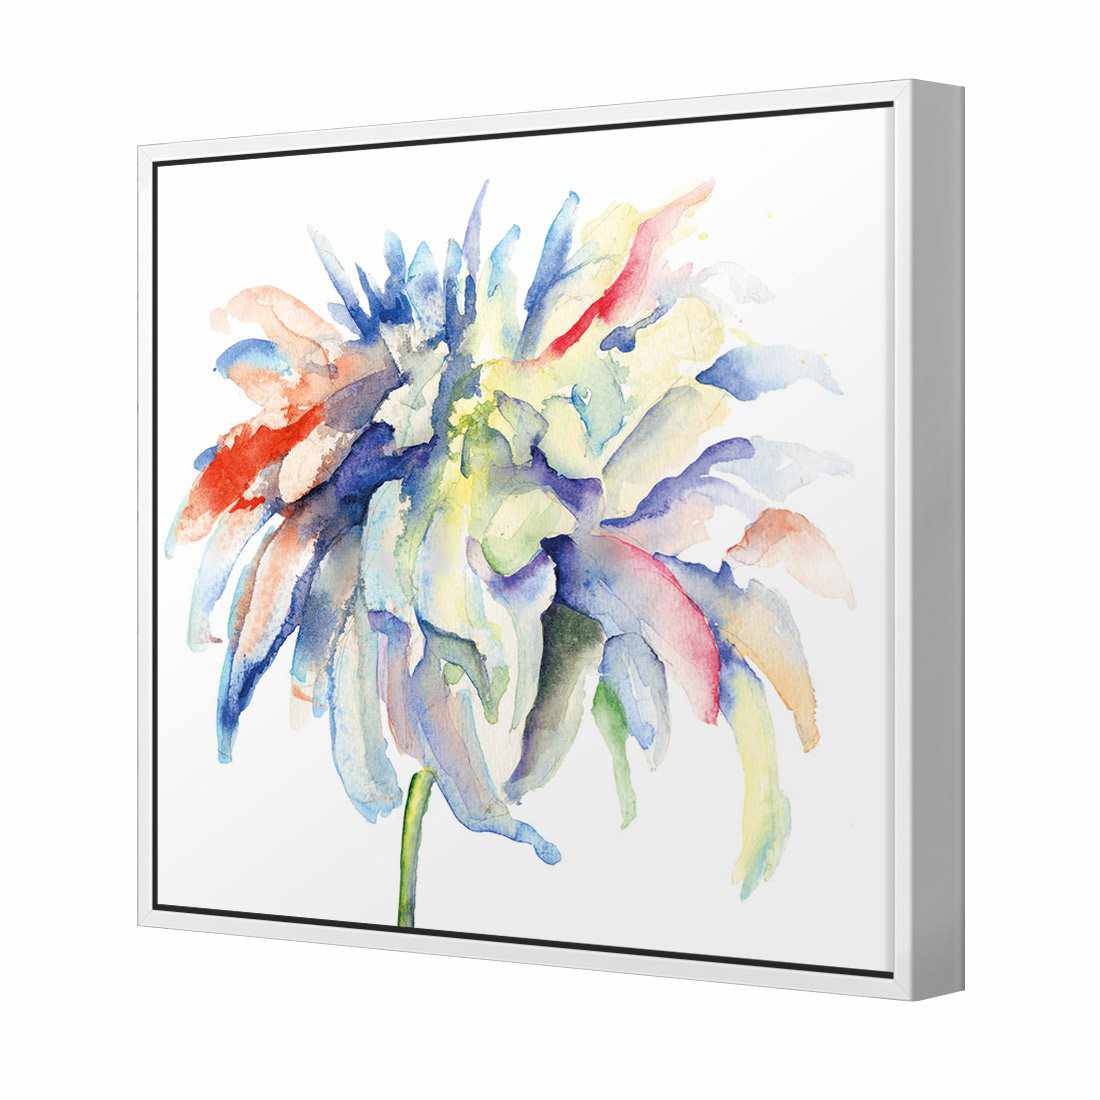 Fairy Floss Canvas Art-Canvas-Wall Art Designs-30x30cm-Canvas - White Frame-Wall Art Designs